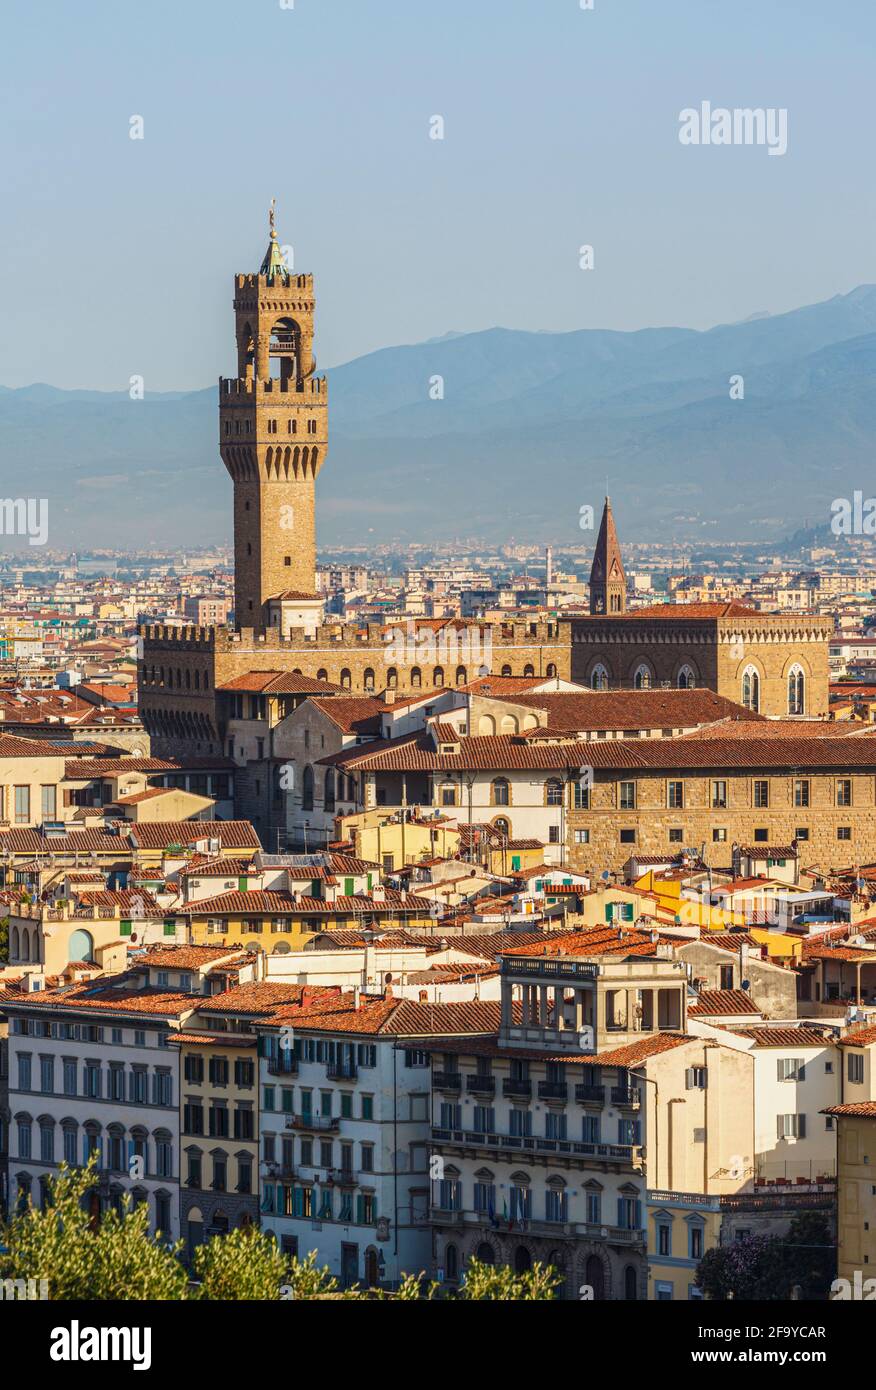 Firenze, Provincia di Firenze, Toscana, Italia. La caratteristica torre di Palazzo Vecchio che sorge sopra i tetti della città. Il centro storico di Florenc Foto Stock